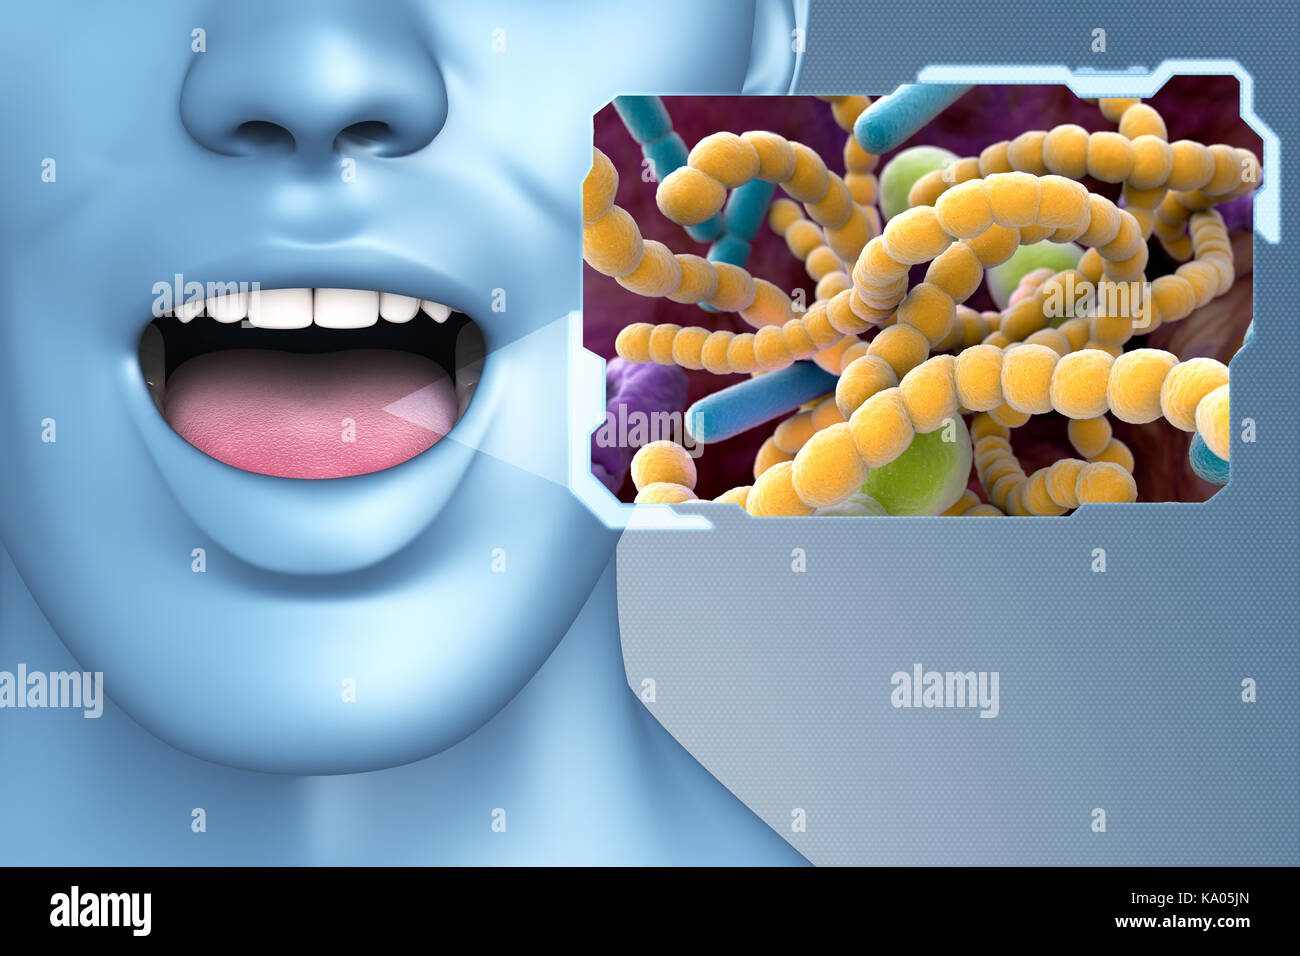 L'halitose bactéries trouvées dans la bouche qui peut causer l'halitose ou mauvaise haleine. 3d illustration Banque D'Images